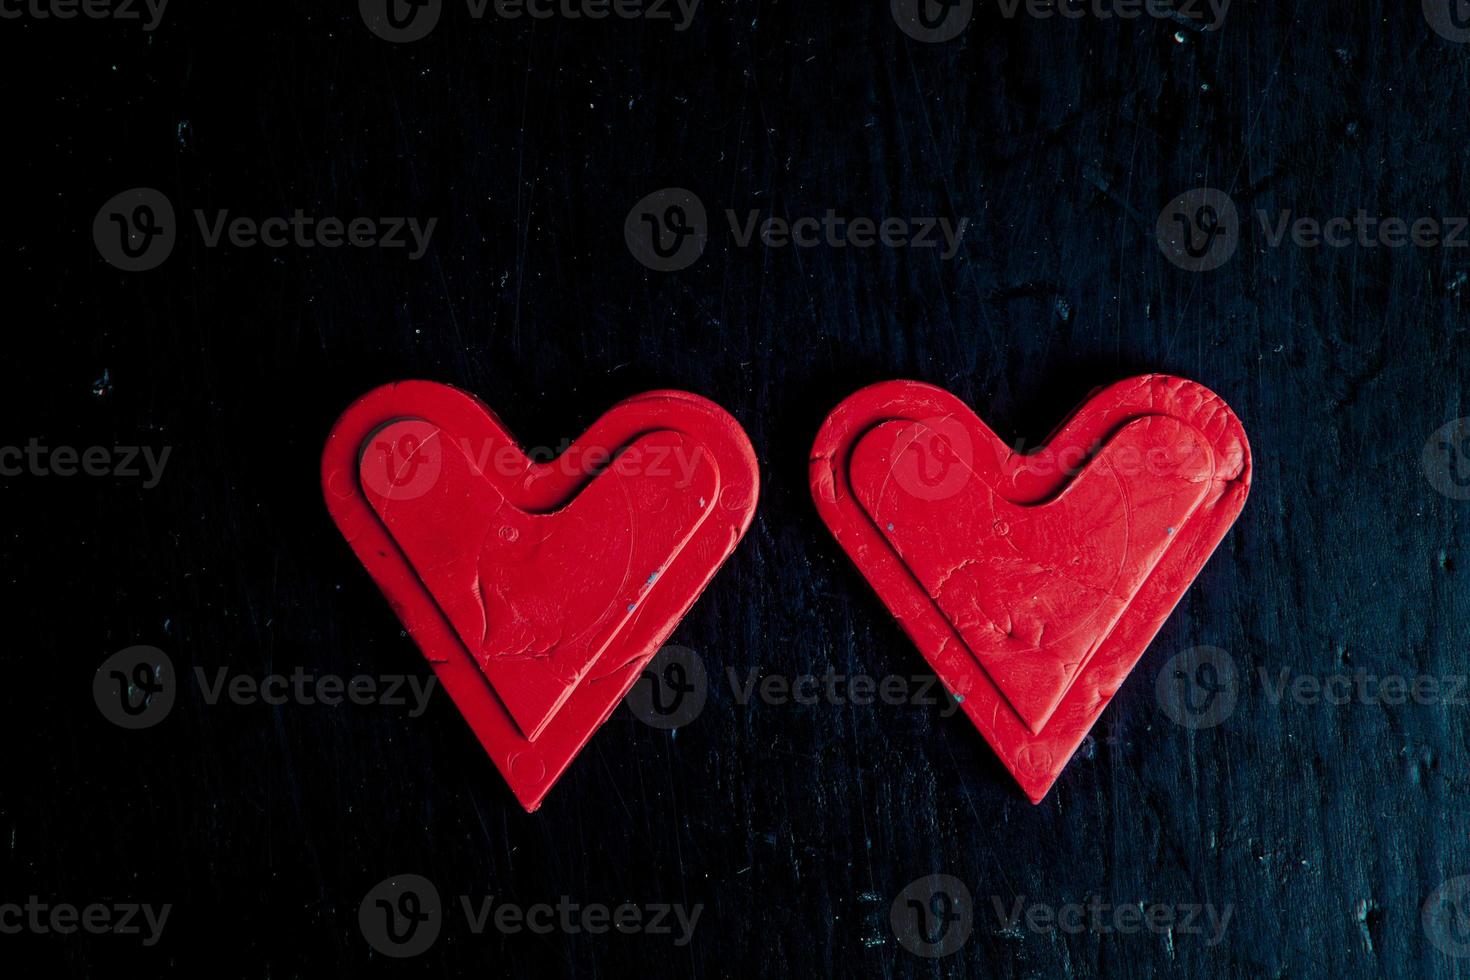 texture avec des coeurs d'amour pour la conception. concept de carte de saint valentin. coeur pour carte de voeux saint valentin. l'amour c'est. photo